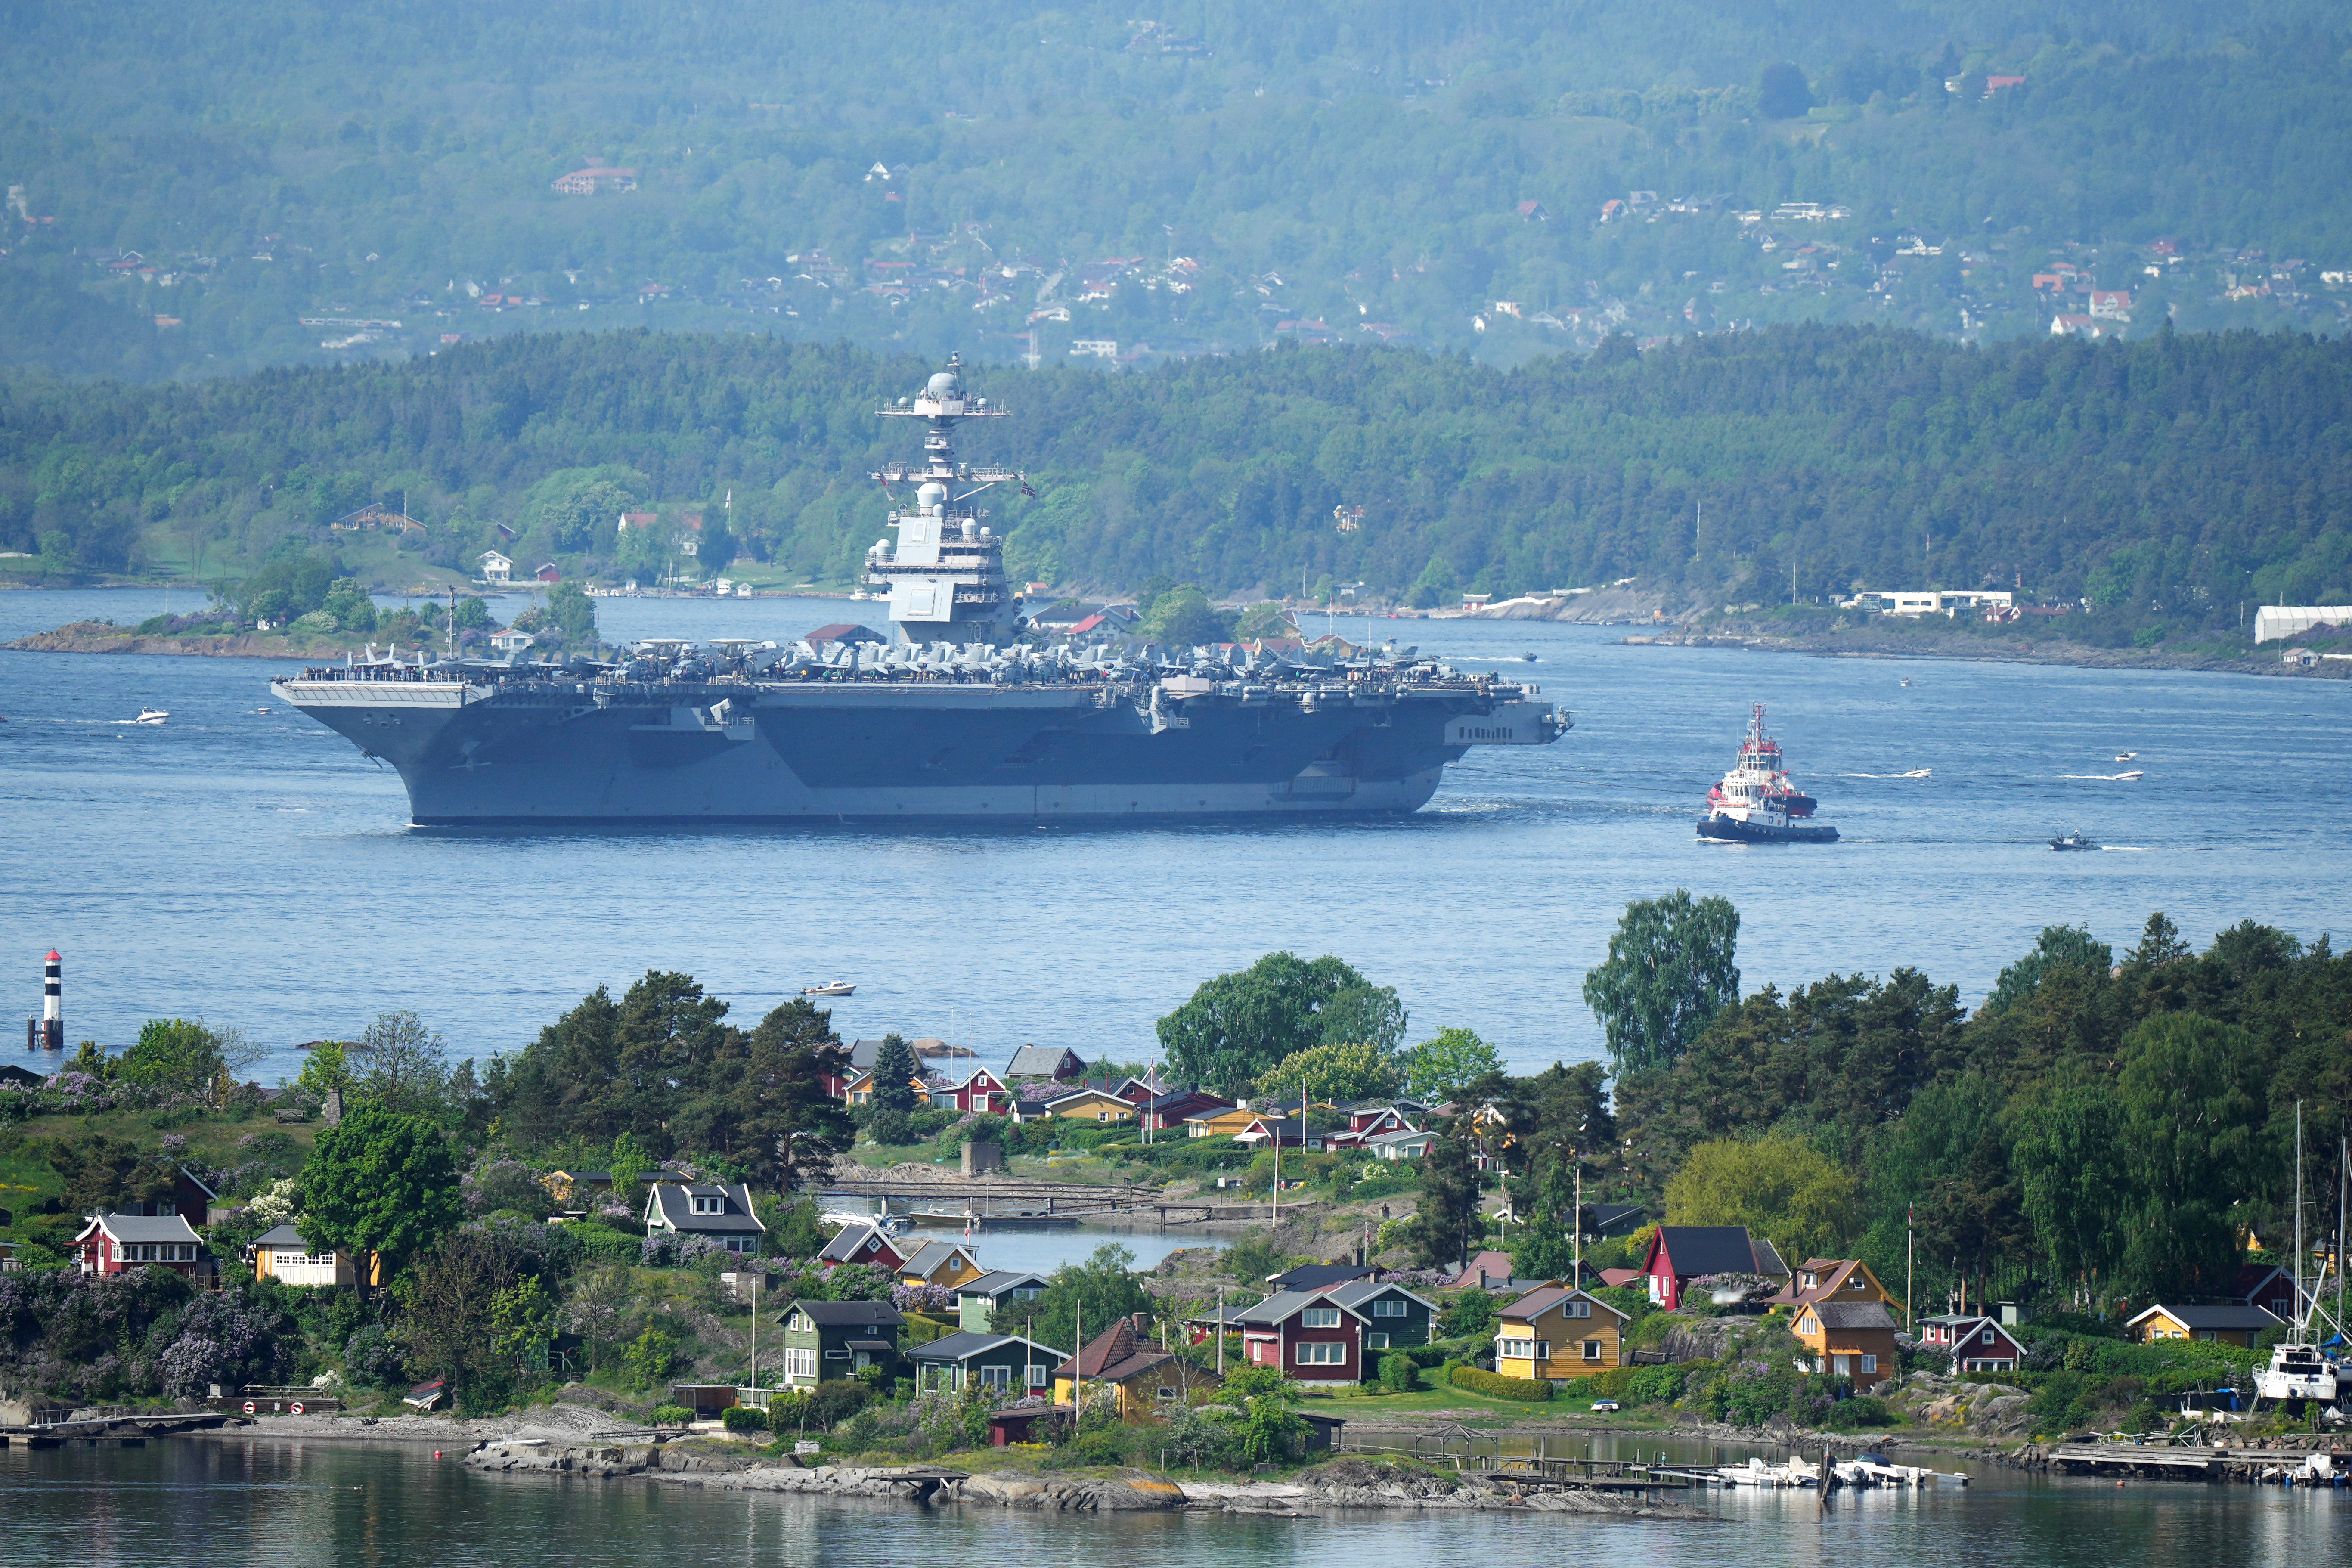 Vista del portaaviones estadounidense USS Gerald R. Ford en el fiordo de Oslo, visto desde Ekebergskrenten, Noruega, este miércoles 24 de mayo de 2023 (Reuters)